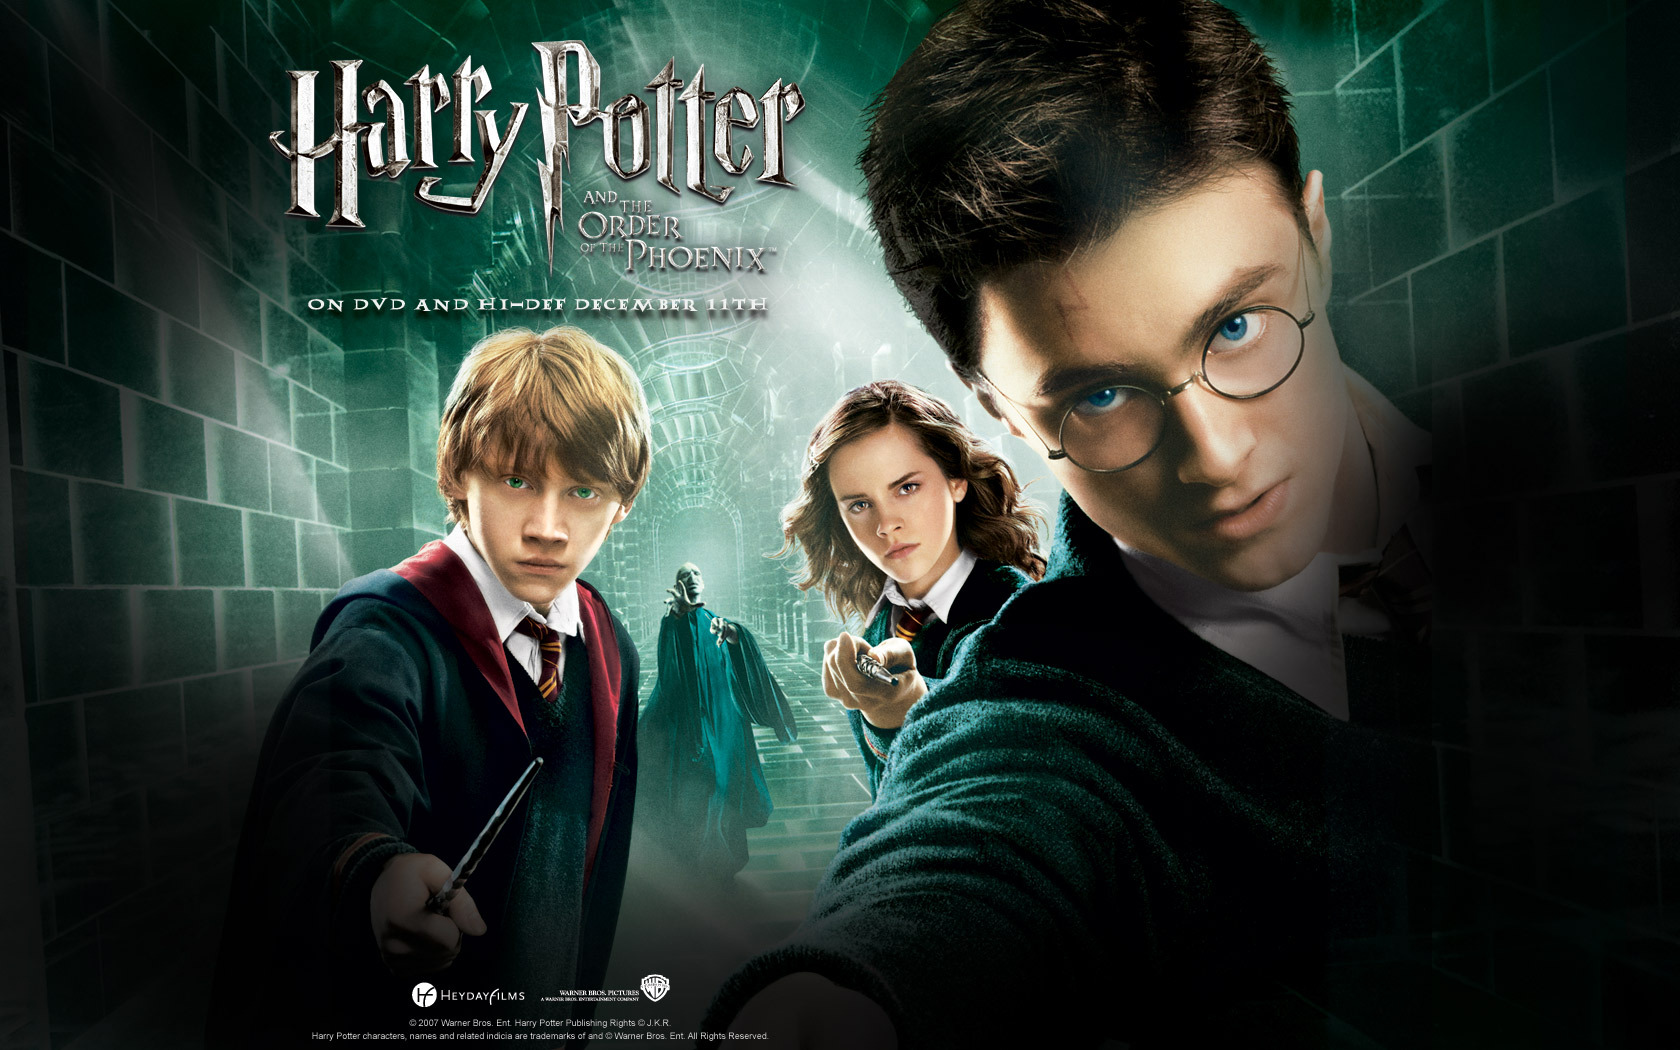 Order of the Phoenix - Harry Potter Wallpaper (931099) - Fanpop